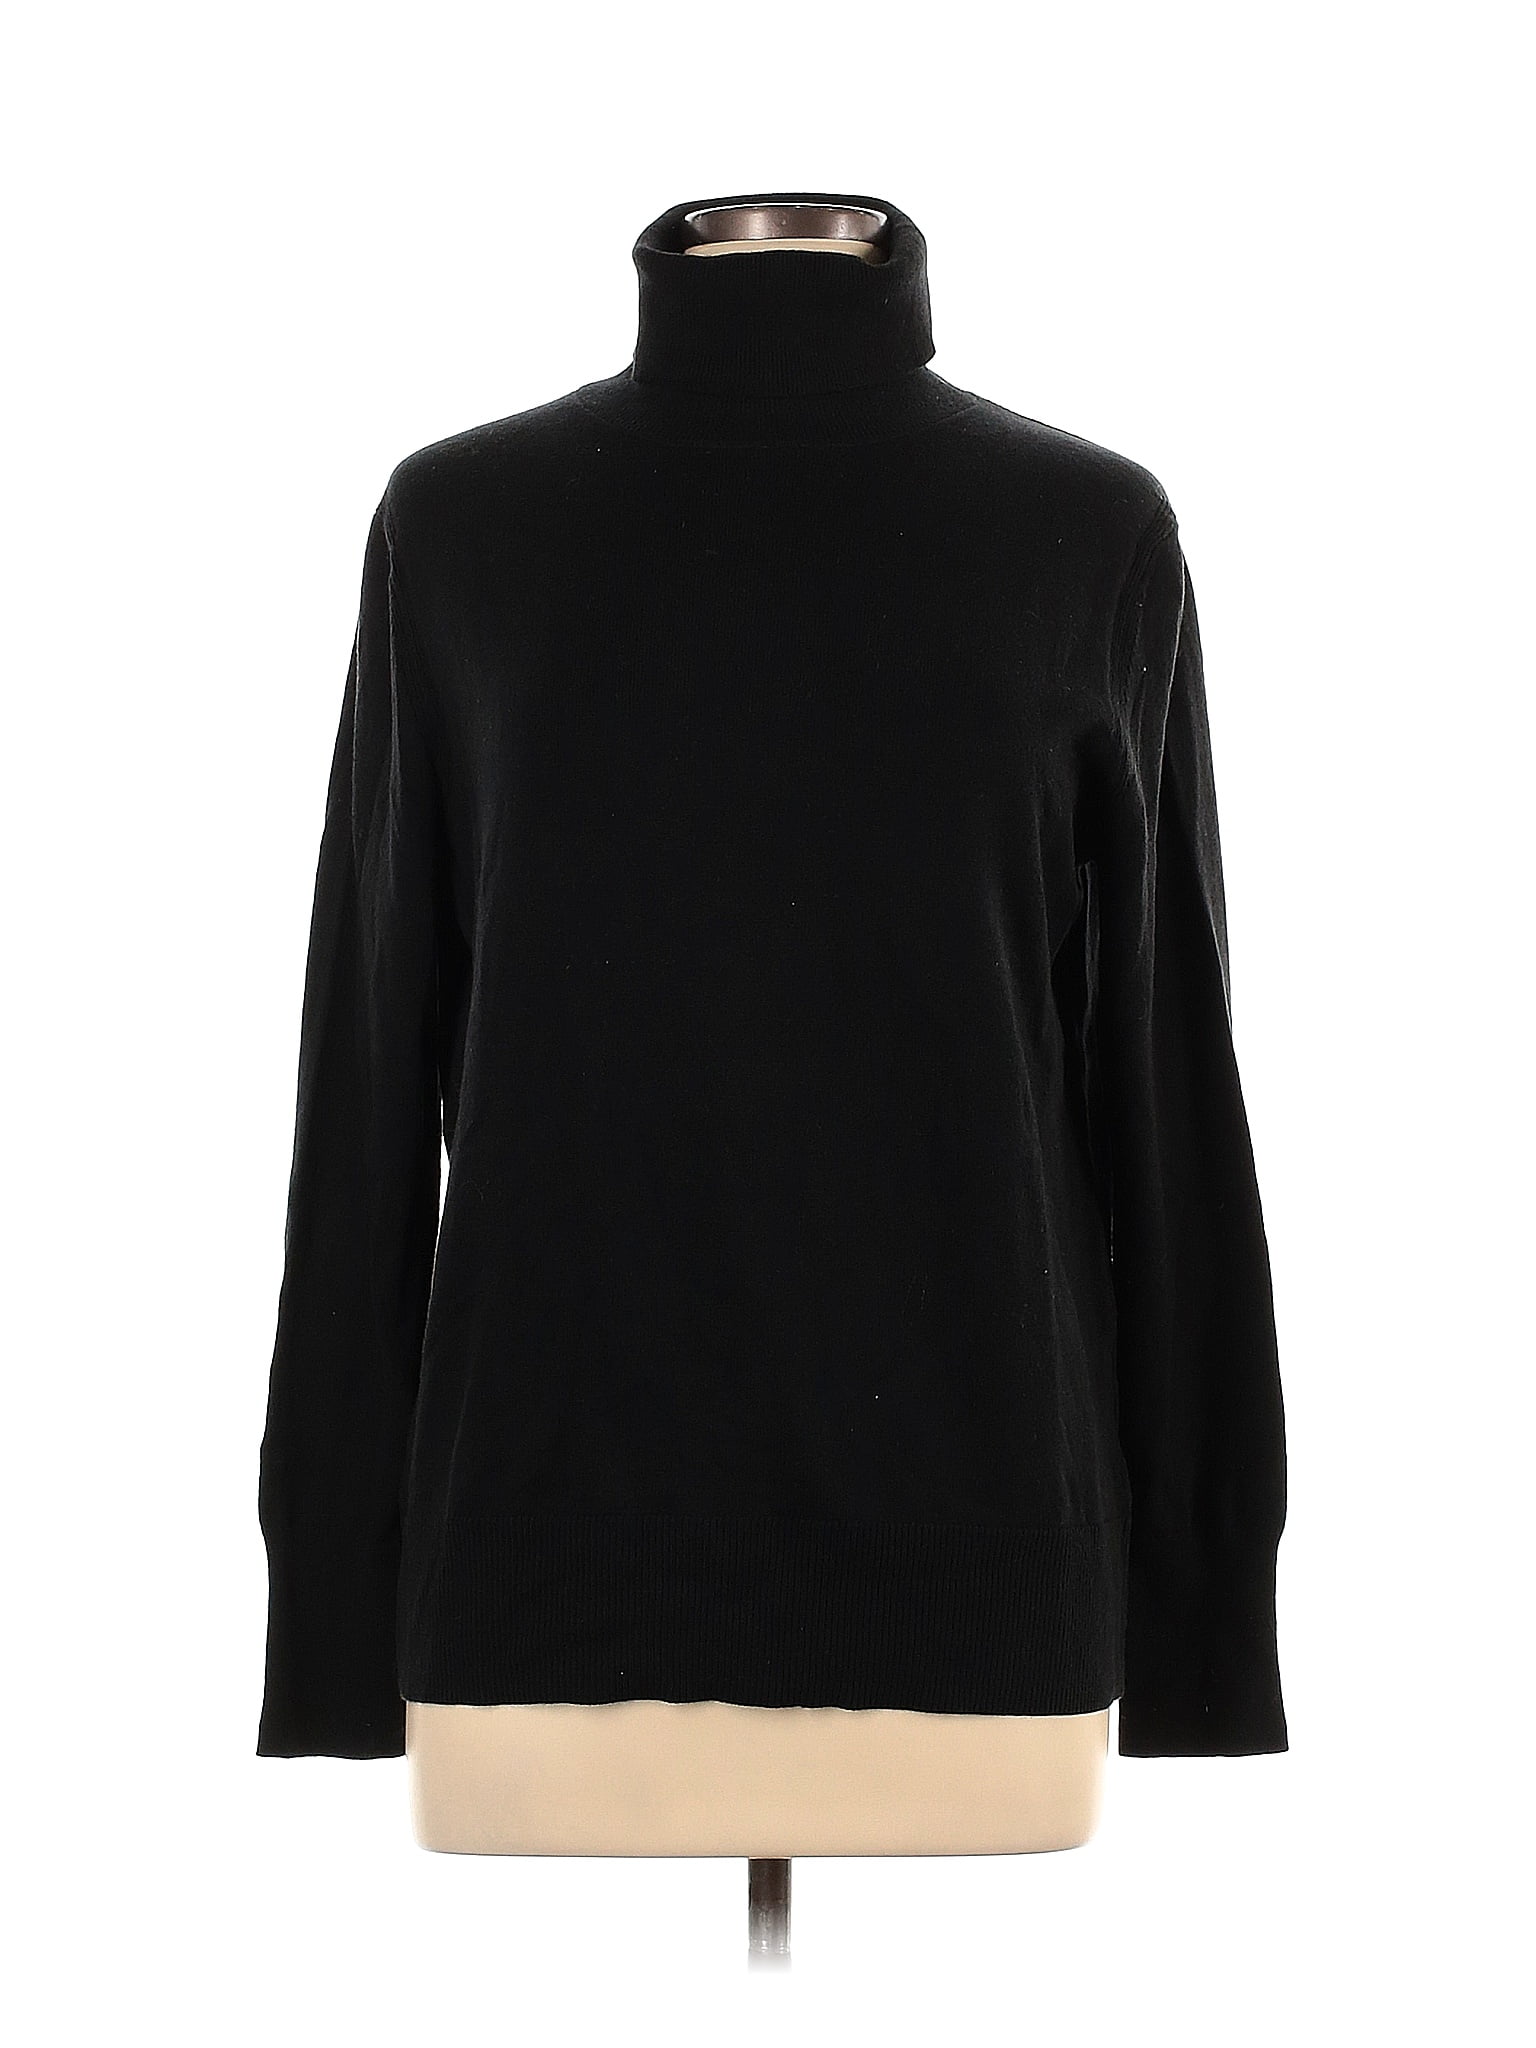 Gap Black Turtleneck Sweater Size L - 64% off | thredUP